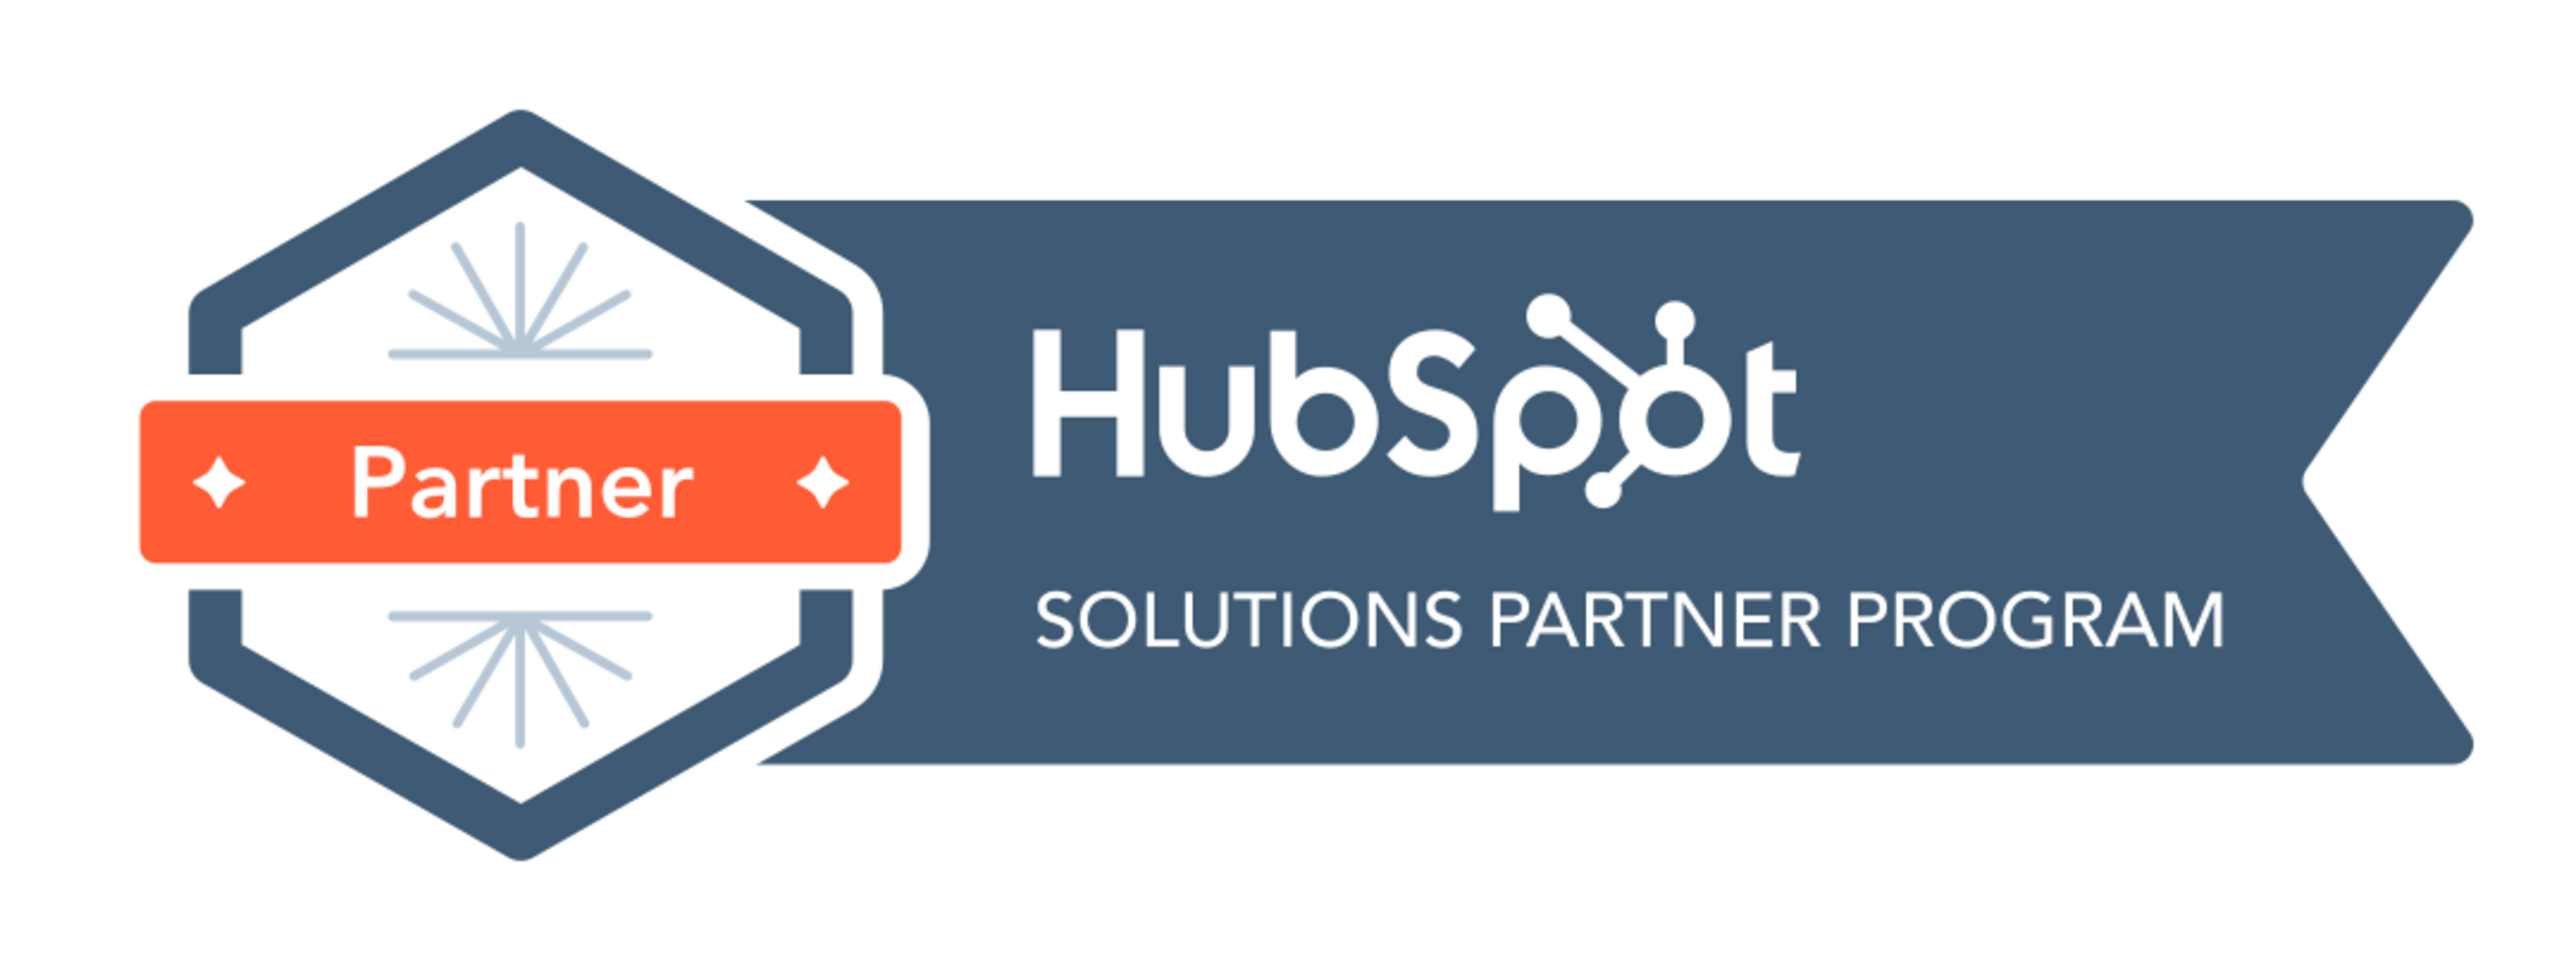 Hubspot Partner logo